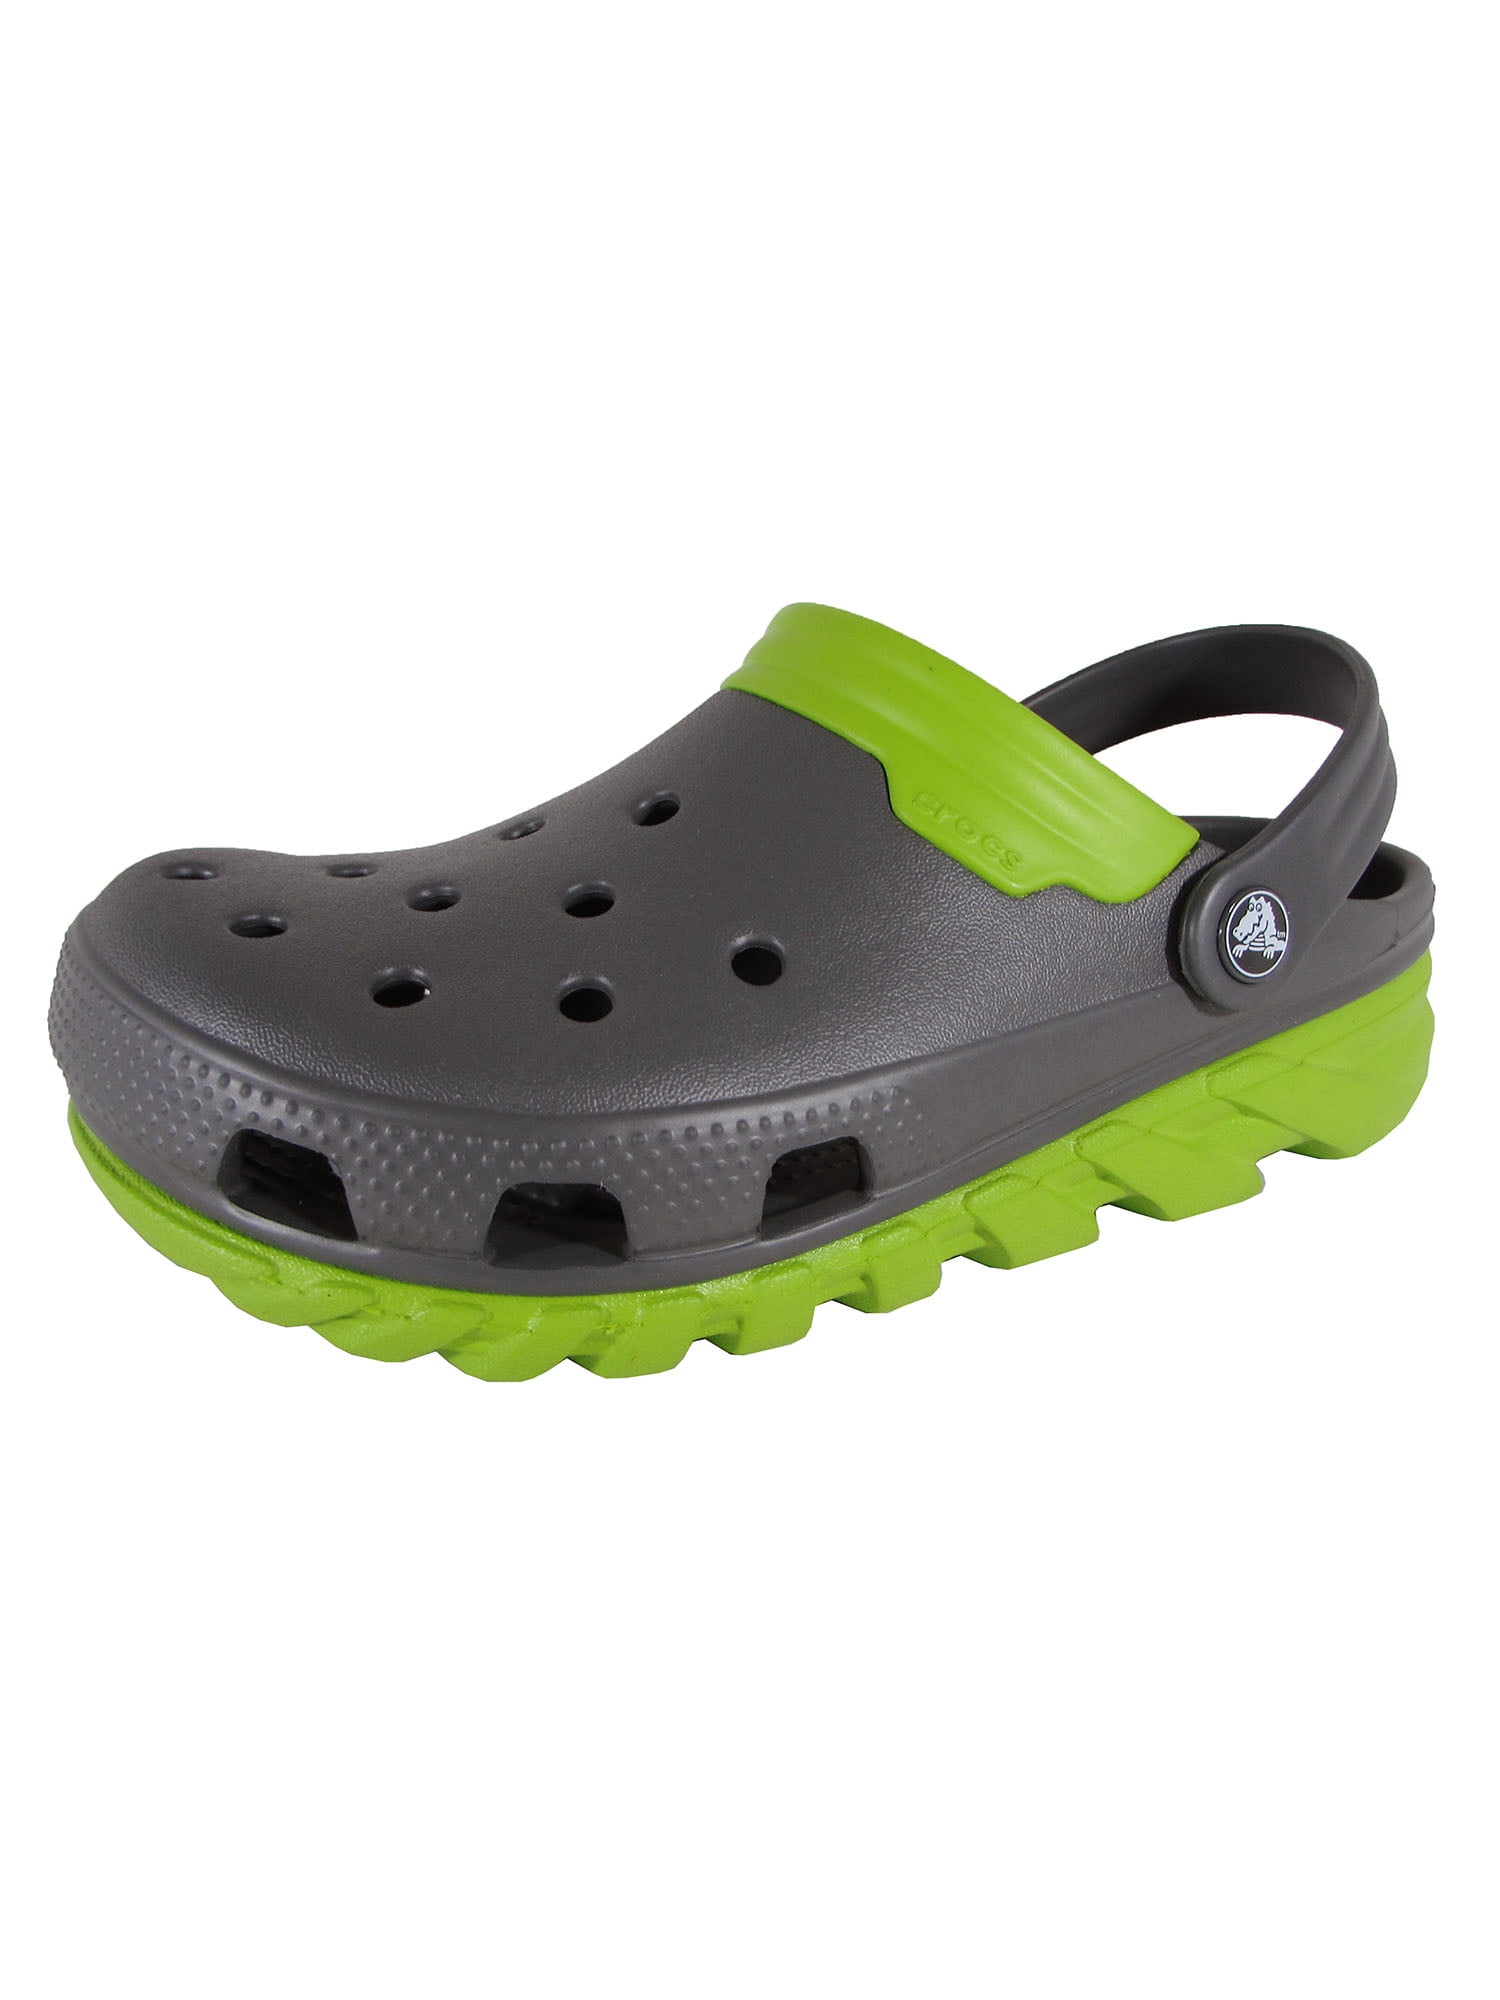 Crocs Mens Duet Max Clog Unisex Sandals Cloggs